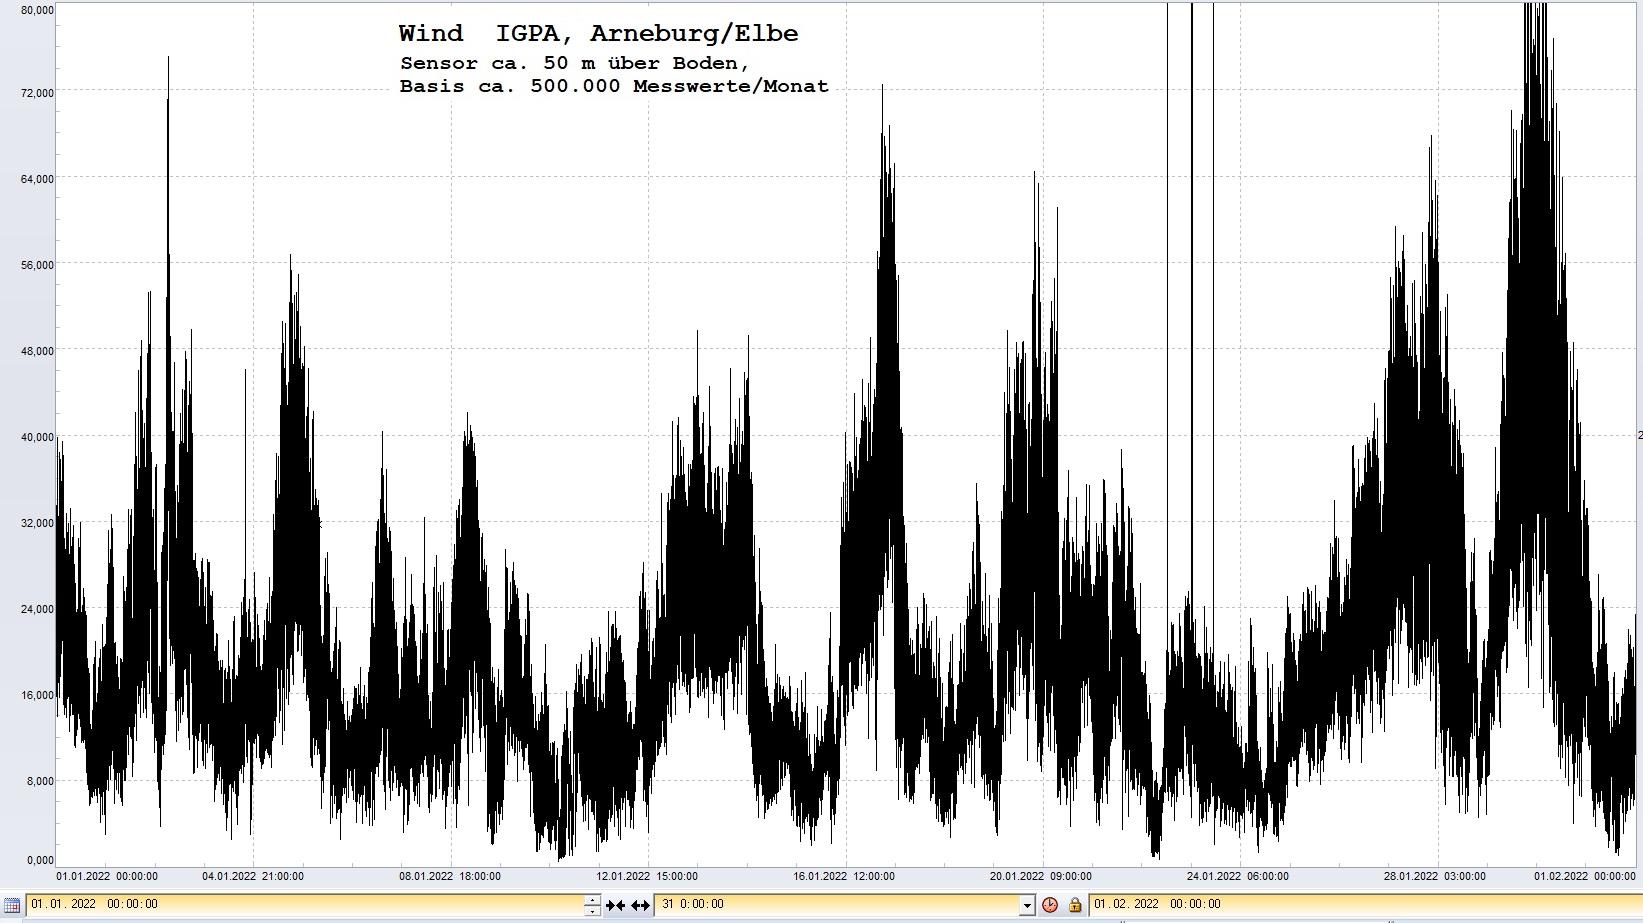 Arneburg Histogramm Winddaten Monat Januar 2022, 
  Sensor auf Gebäude, ca. 50 m über Erdboden, Basis: 5s-Aufzeichnung